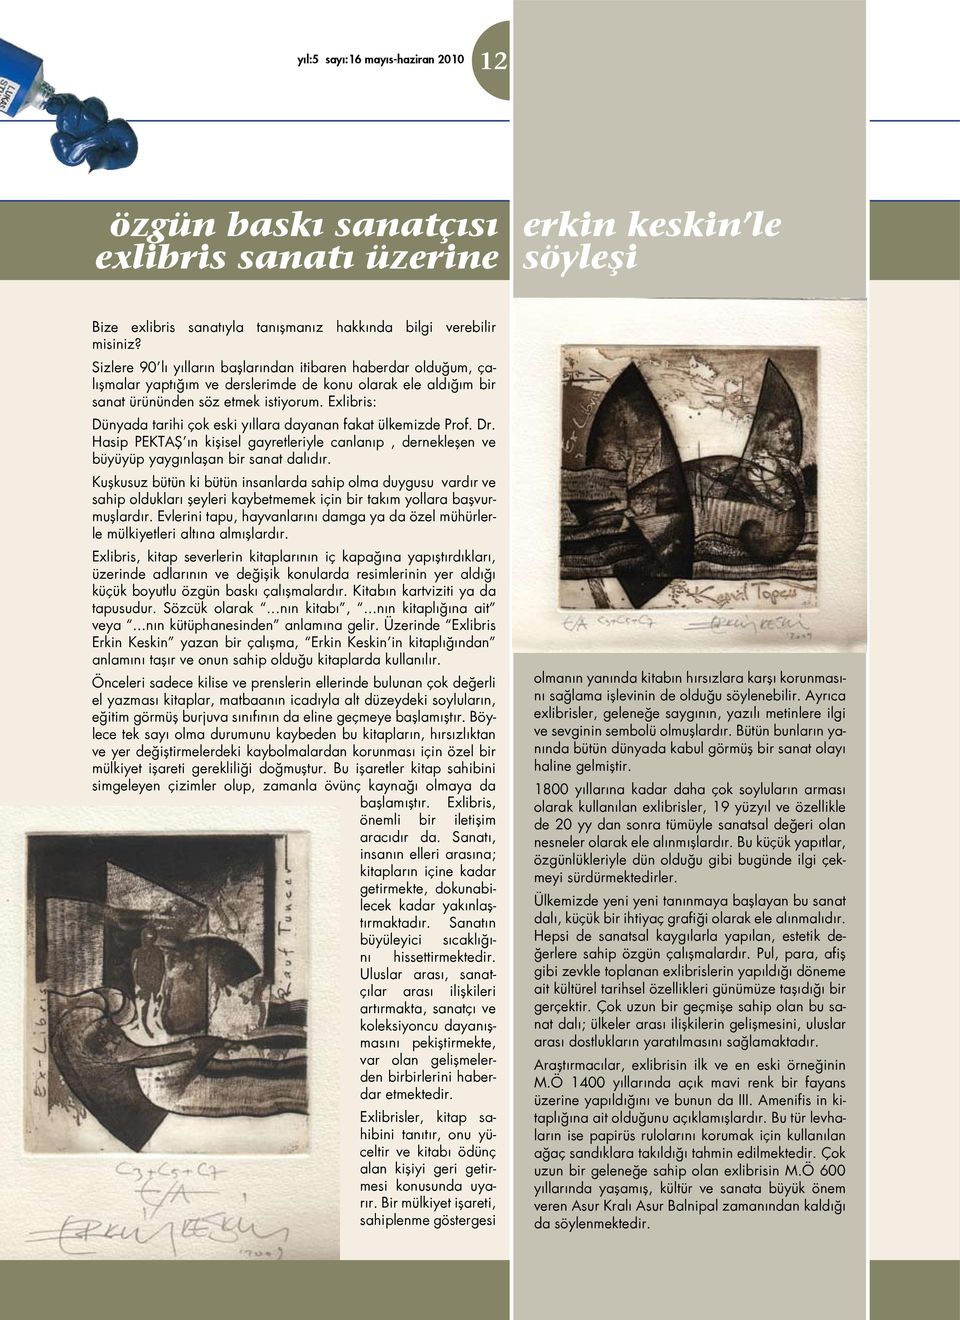 Exlibris: Dünyada tarihi çok eski yıllara dayanan fakat ülkemizde Prof. Dr. Hasip PEKTAŞ ın kişisel gayretleriyle canlanıp, dernekleşen ve büyüyüp yaygınlaşan bir sanat dalıdır.